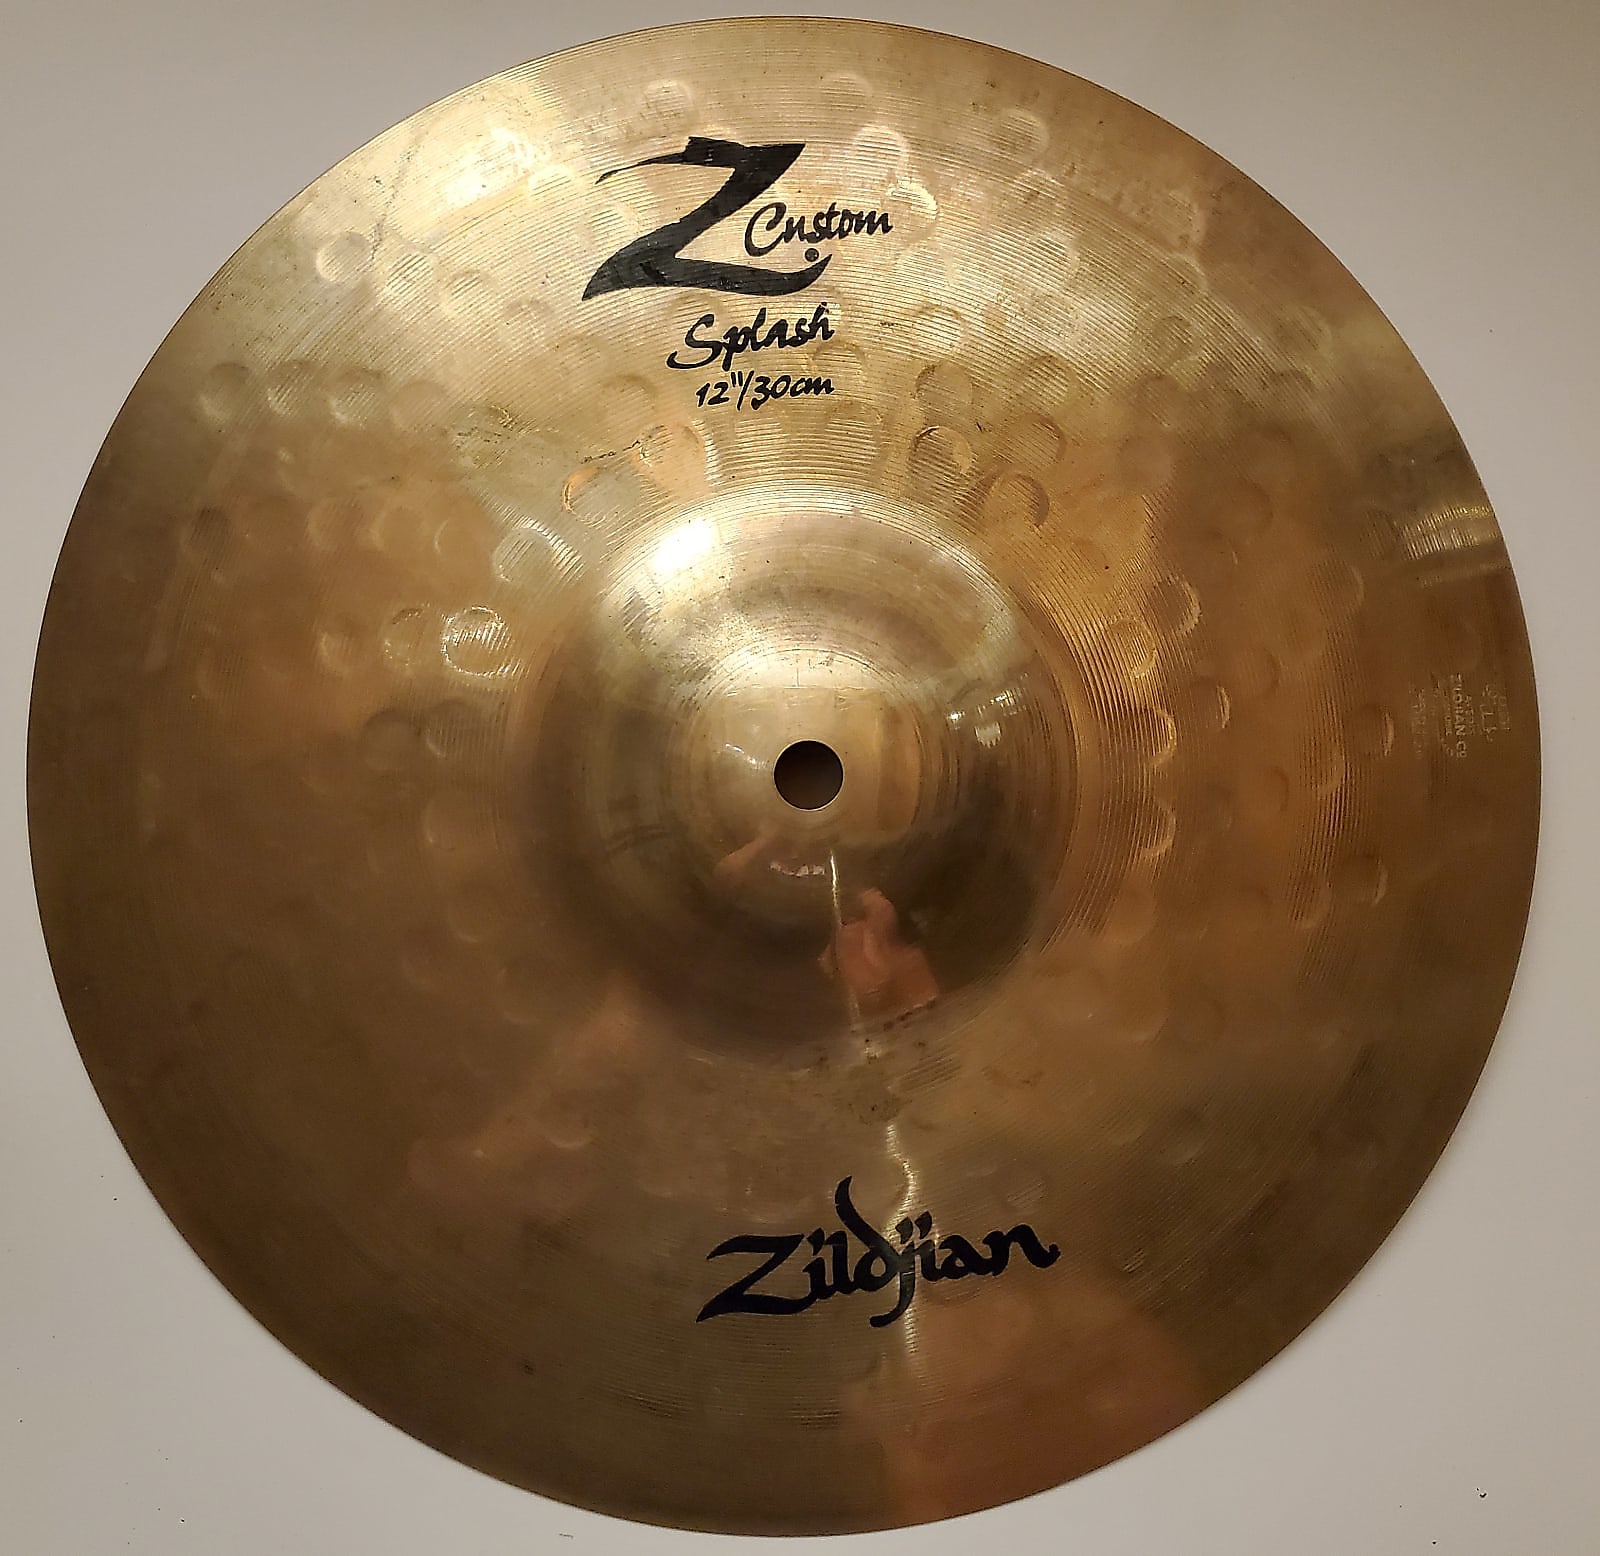 Zildjian 12